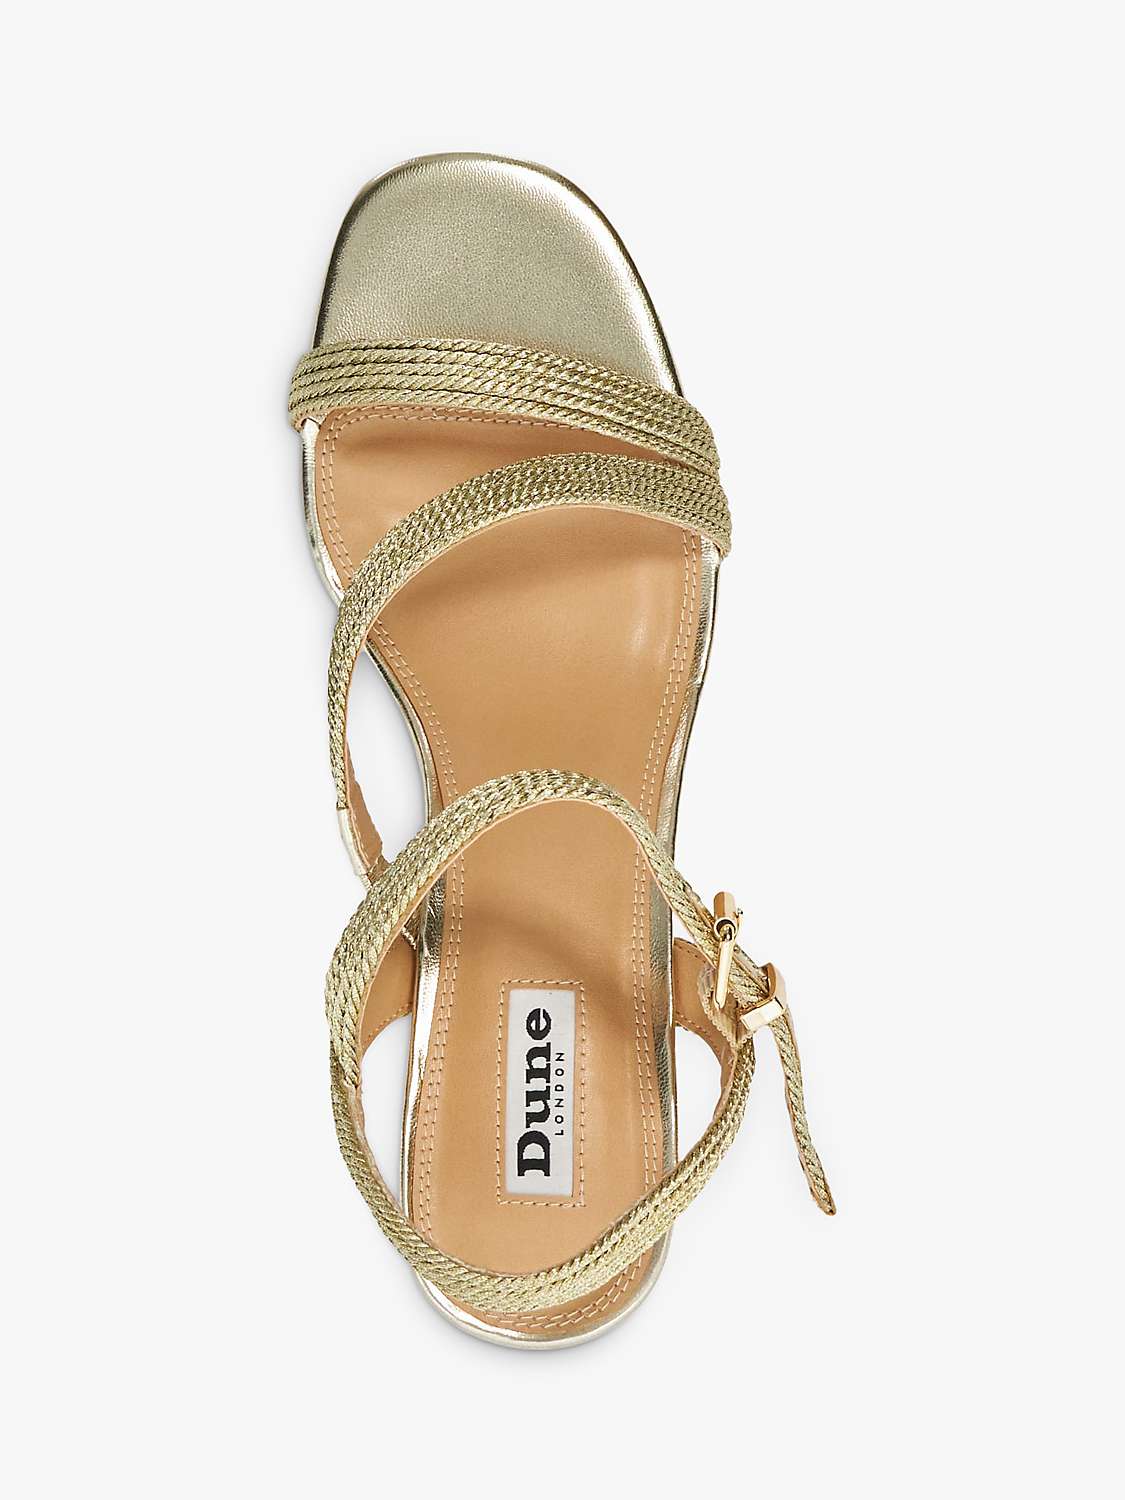 Buy Dune Jelen Fabric Block Heel Sandals, Gold Online at johnlewis.com